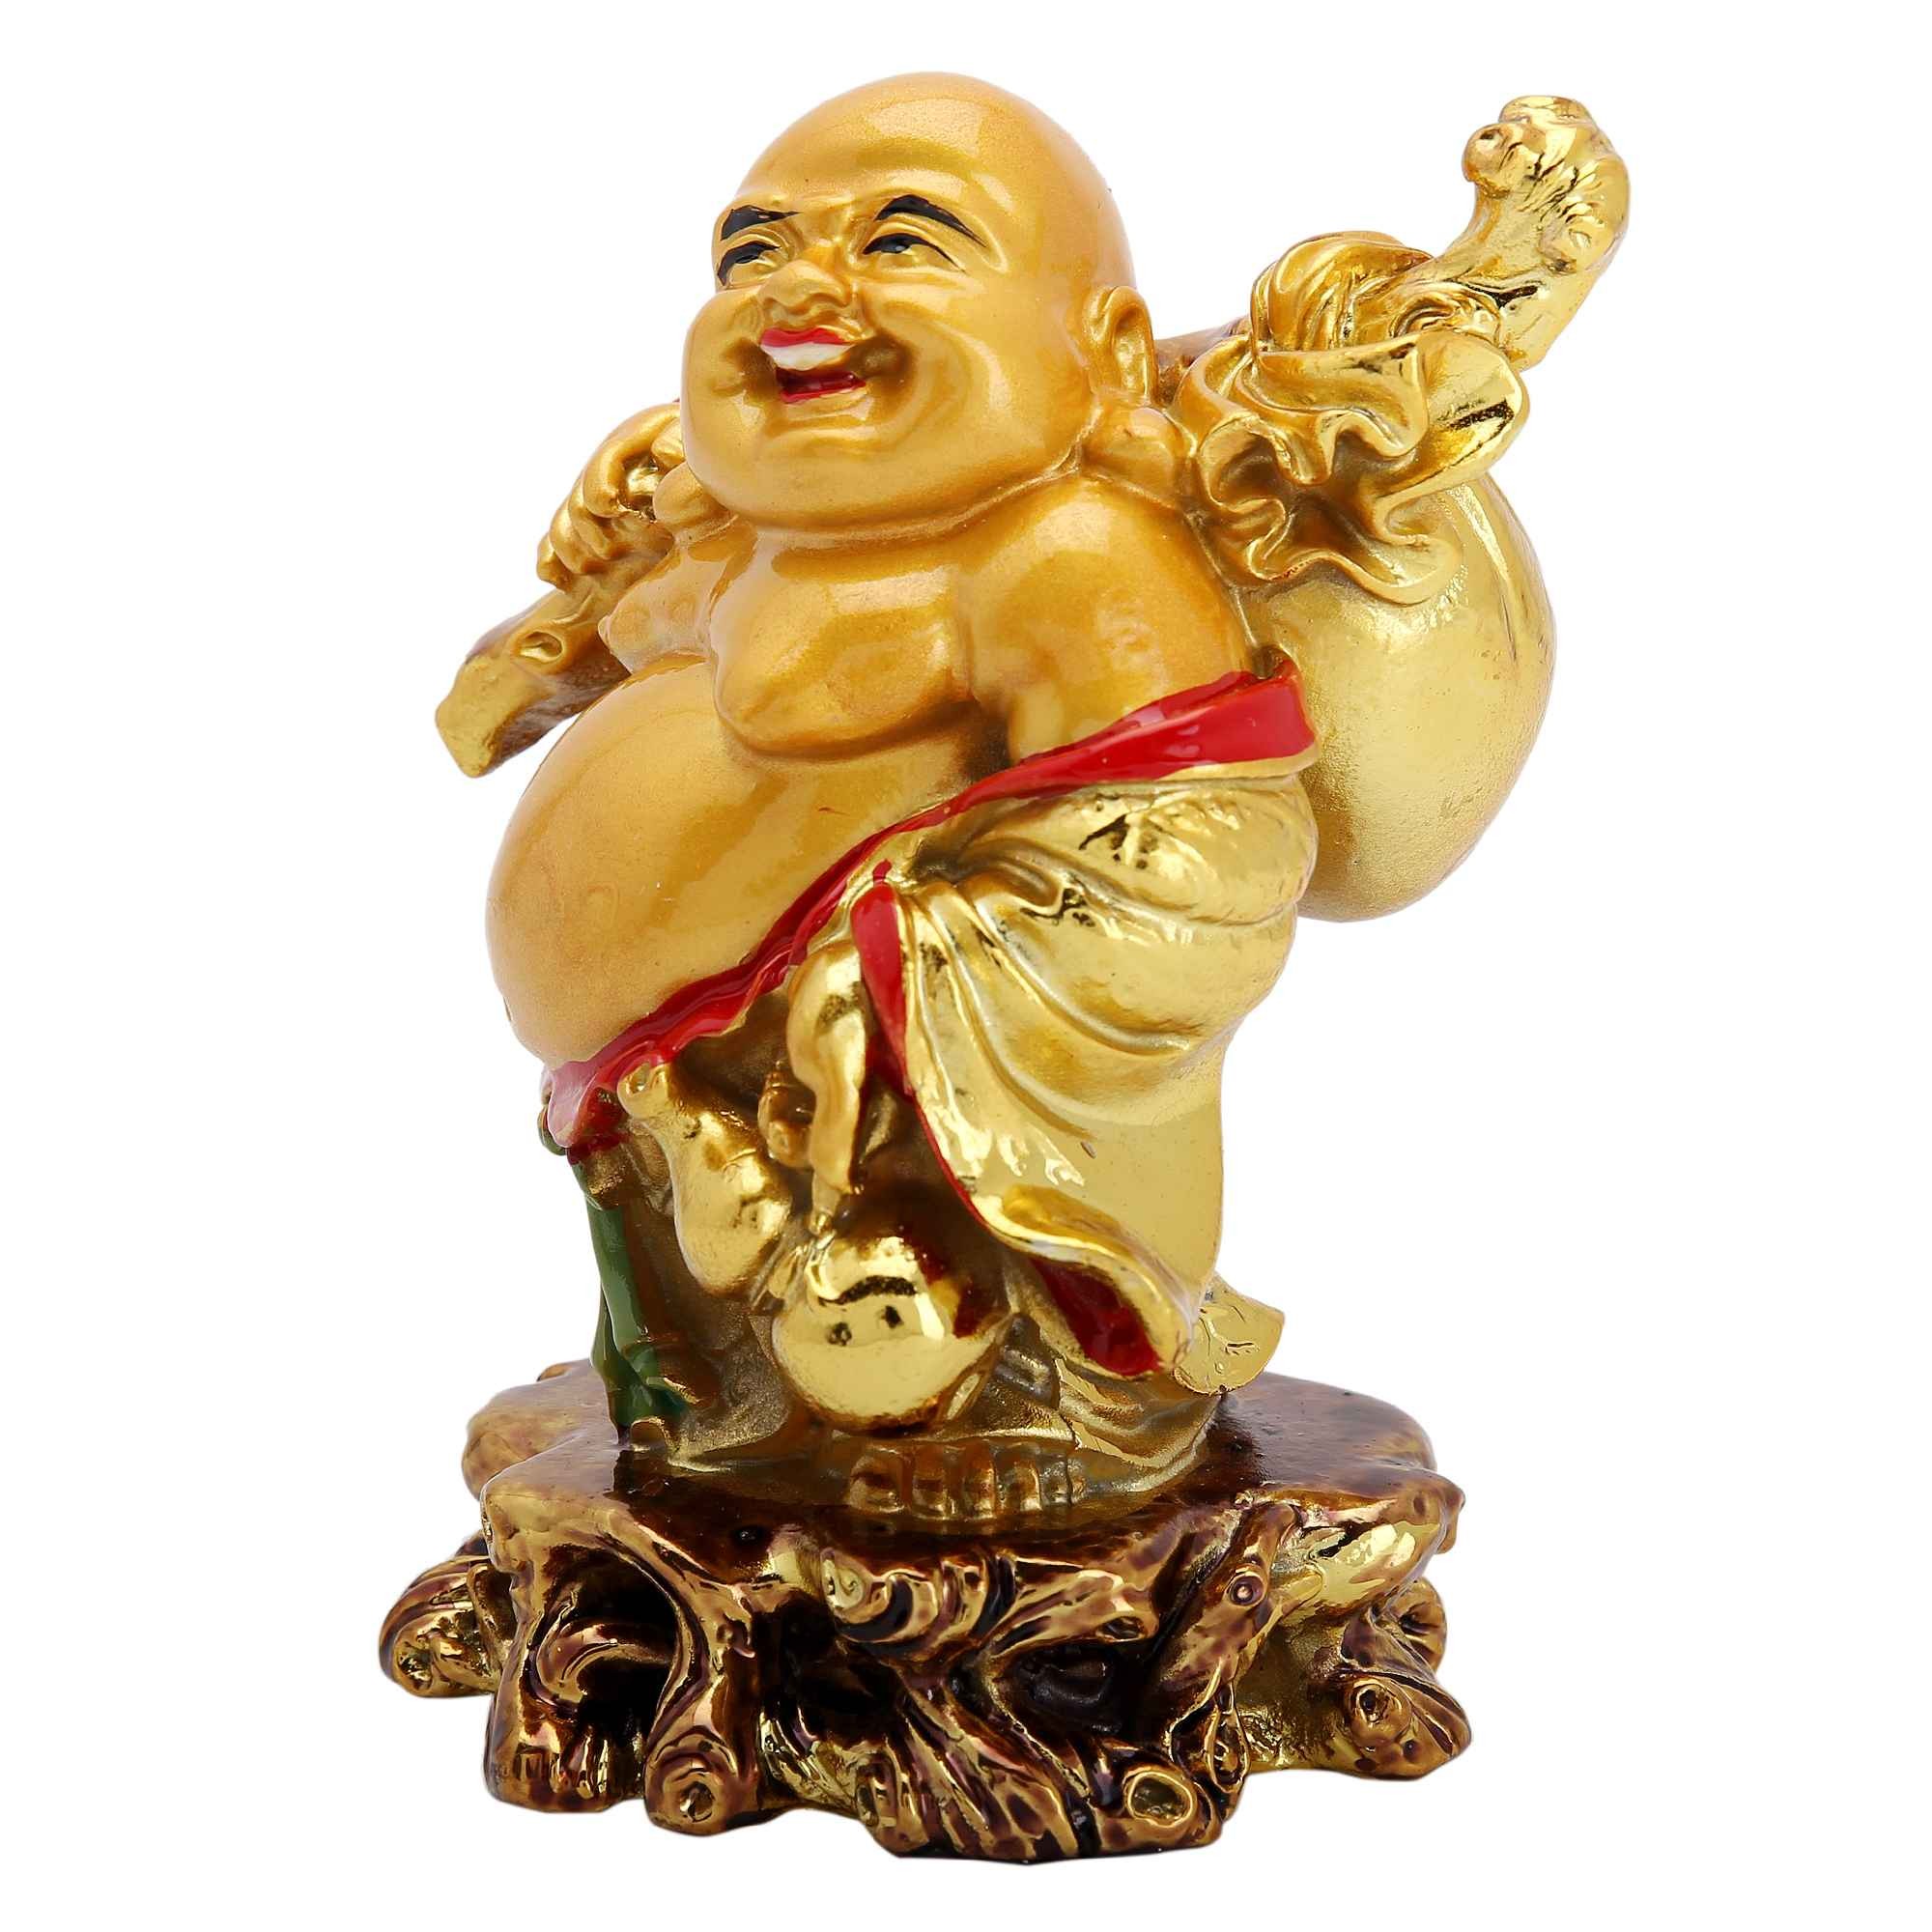 Feng Shui Laughing Buddha